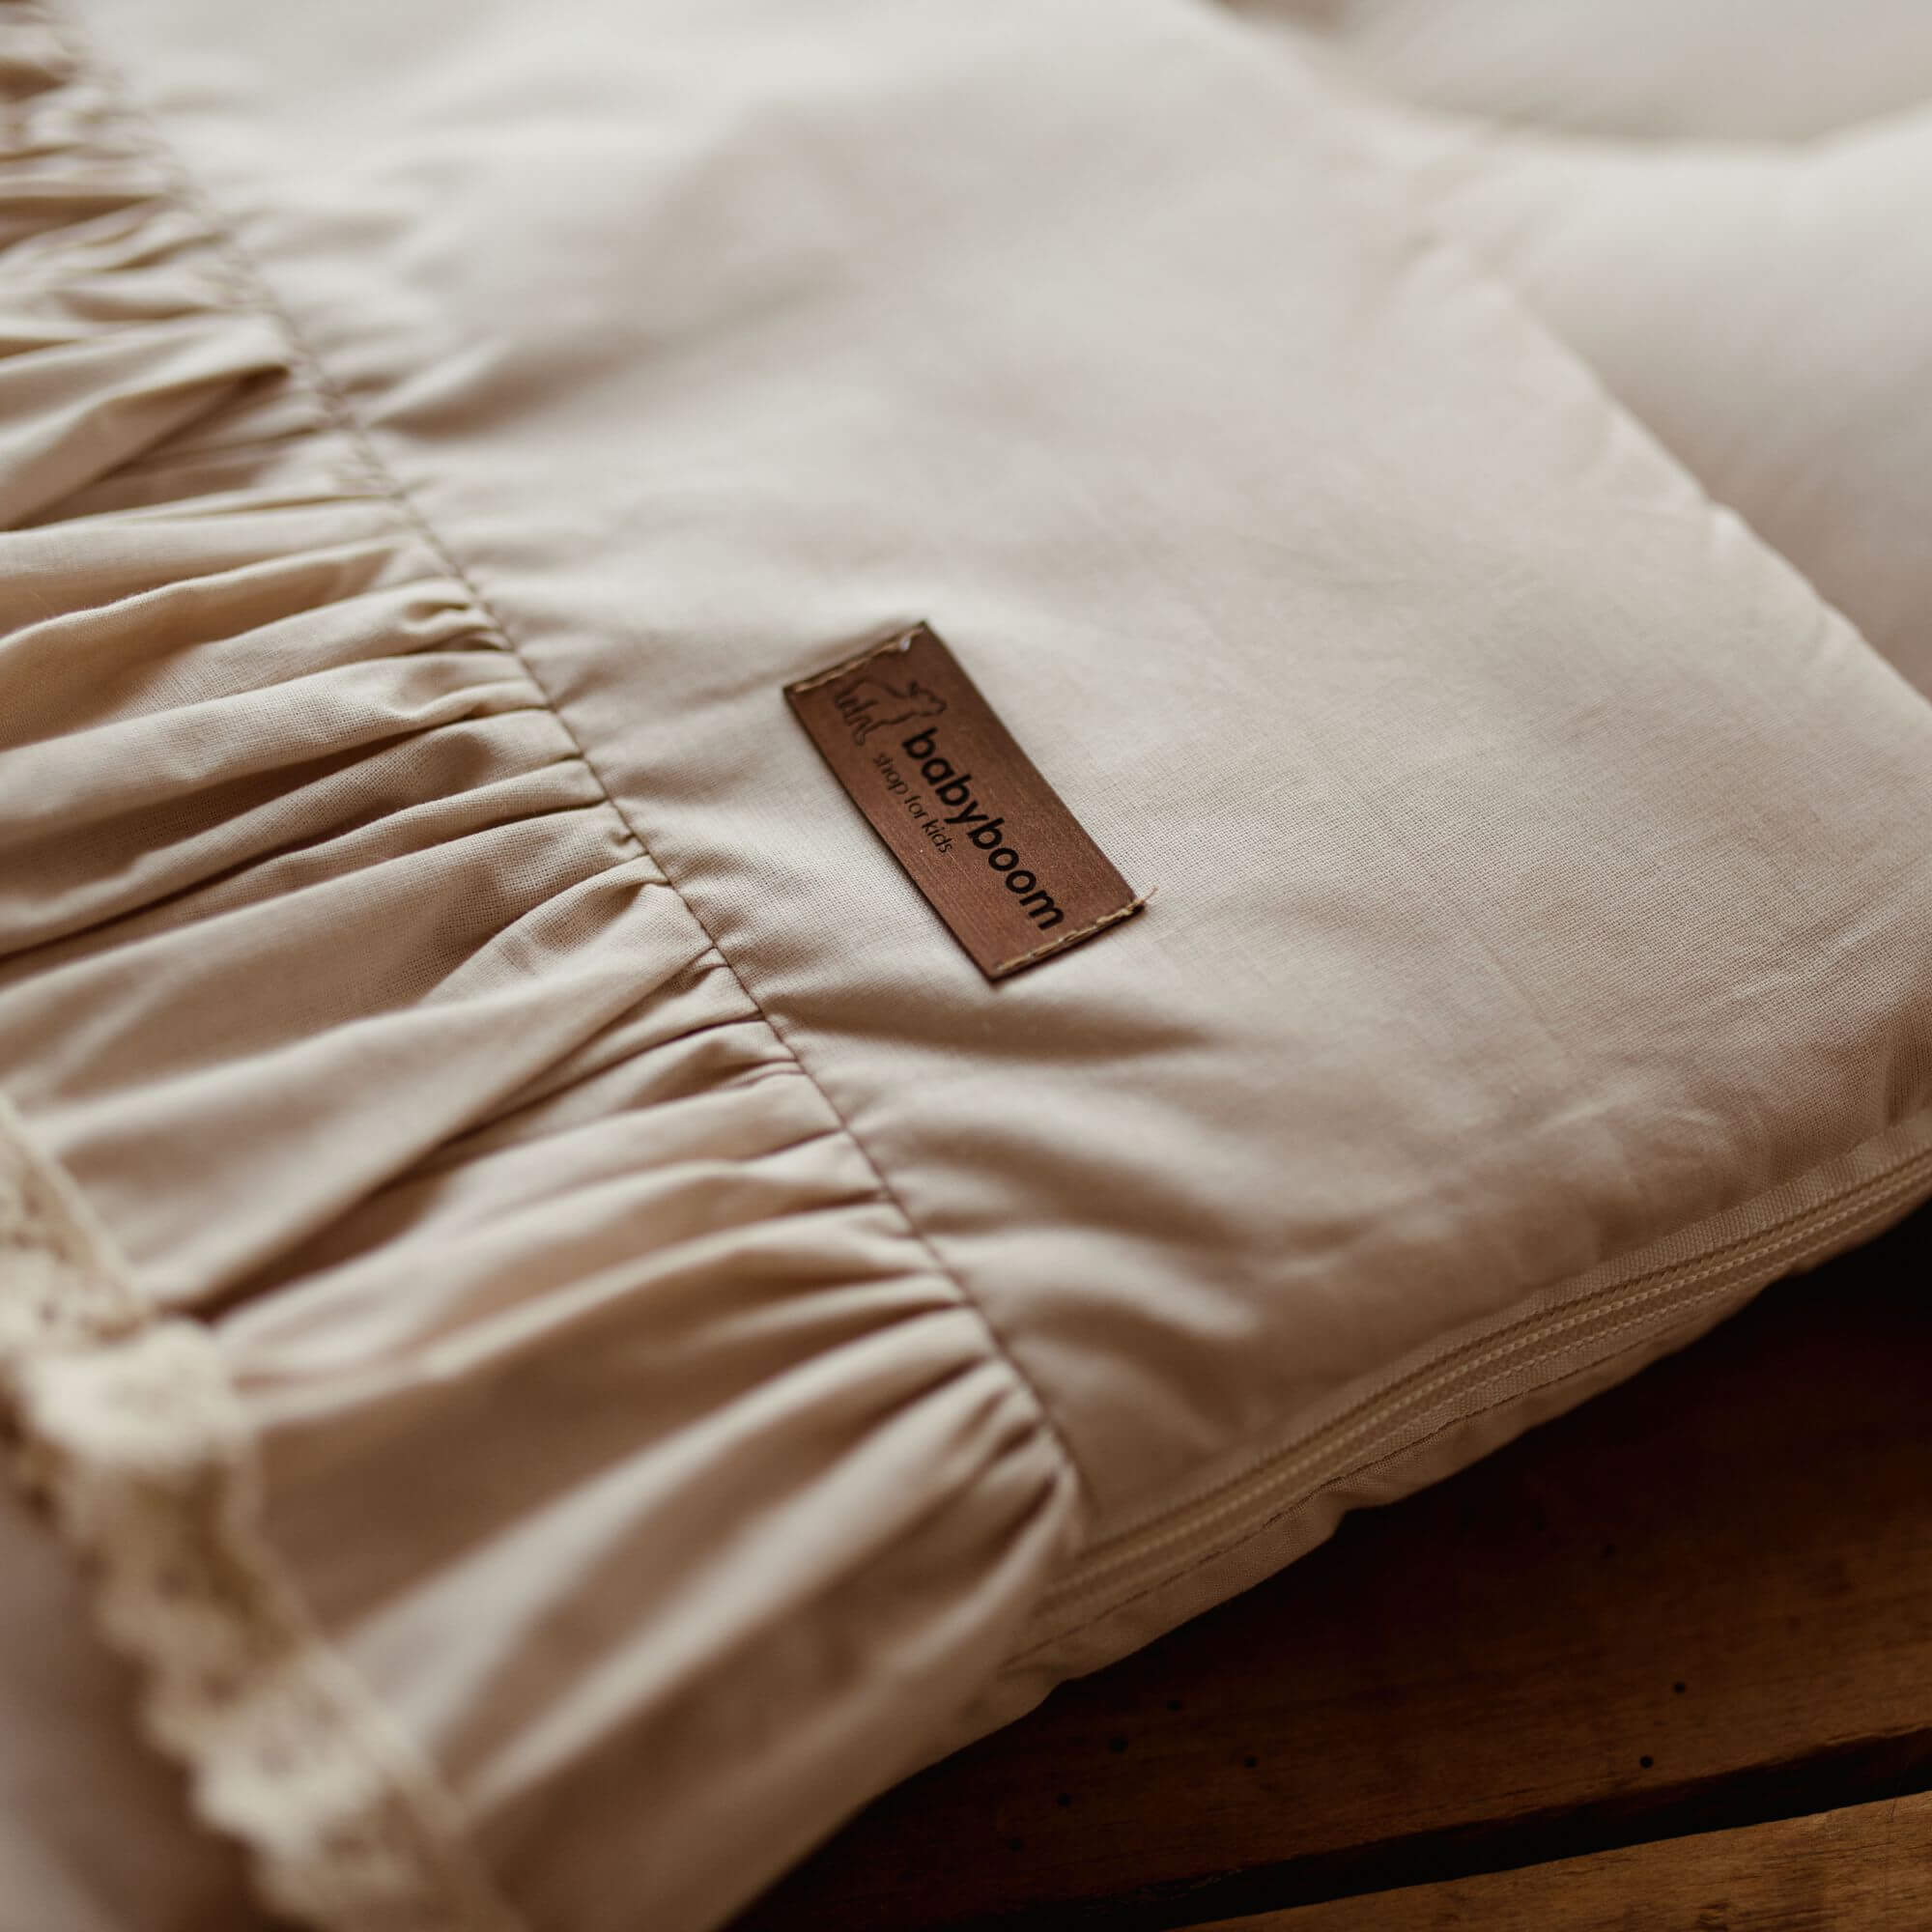 Premium Babyschlafsack Retro Romantic mit Rüschen & beige Spitze